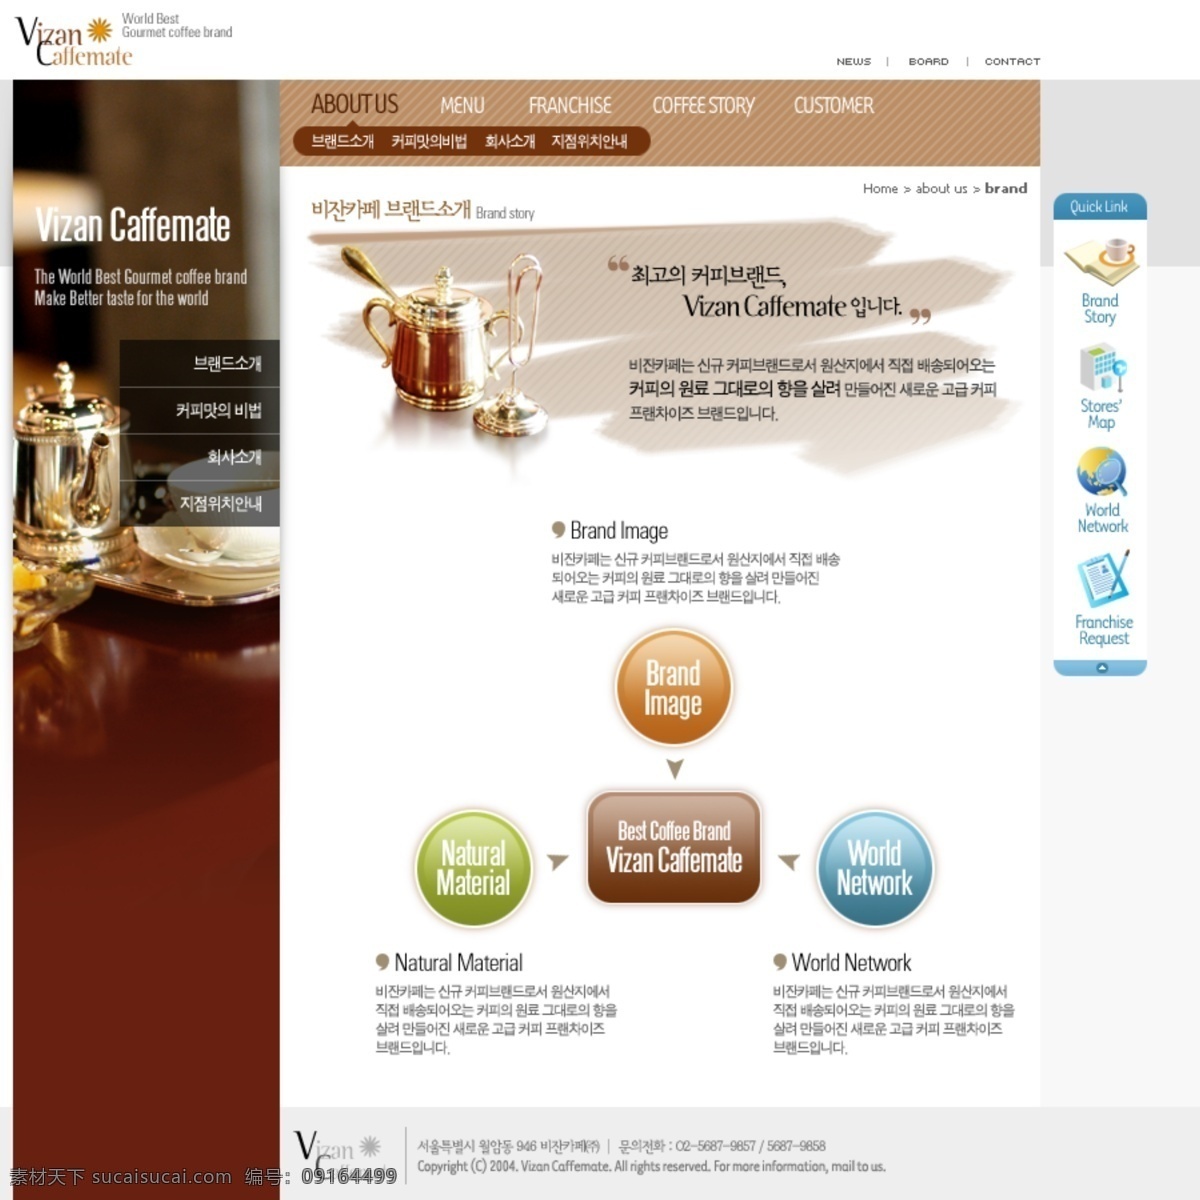 咖啡 网页设计 咖啡网页设计 欧美模板 欧美网页 网页模板 源文件 网页素材